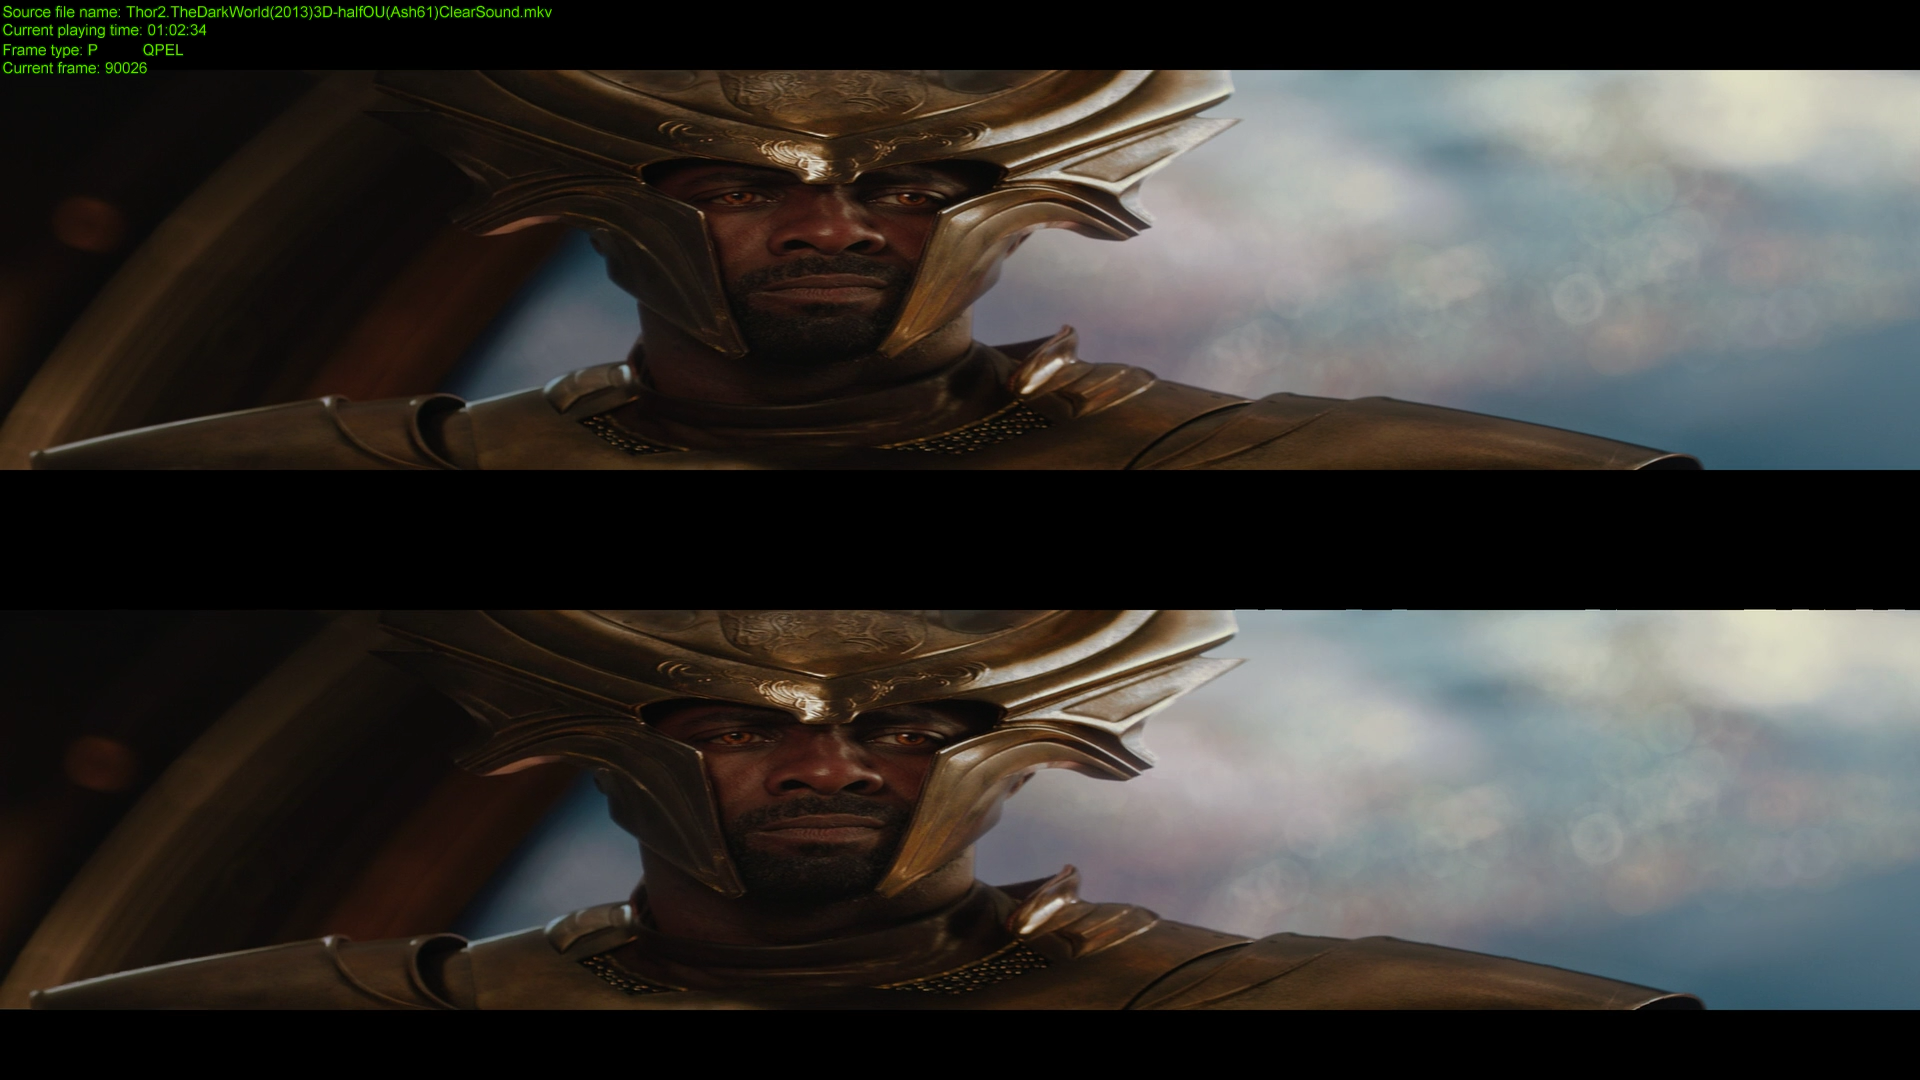 Тор 2: Царство тьмы / Thor: The Dark World (2013) BDRip 1080p | 3D-Video | halfOU | Чистый звук